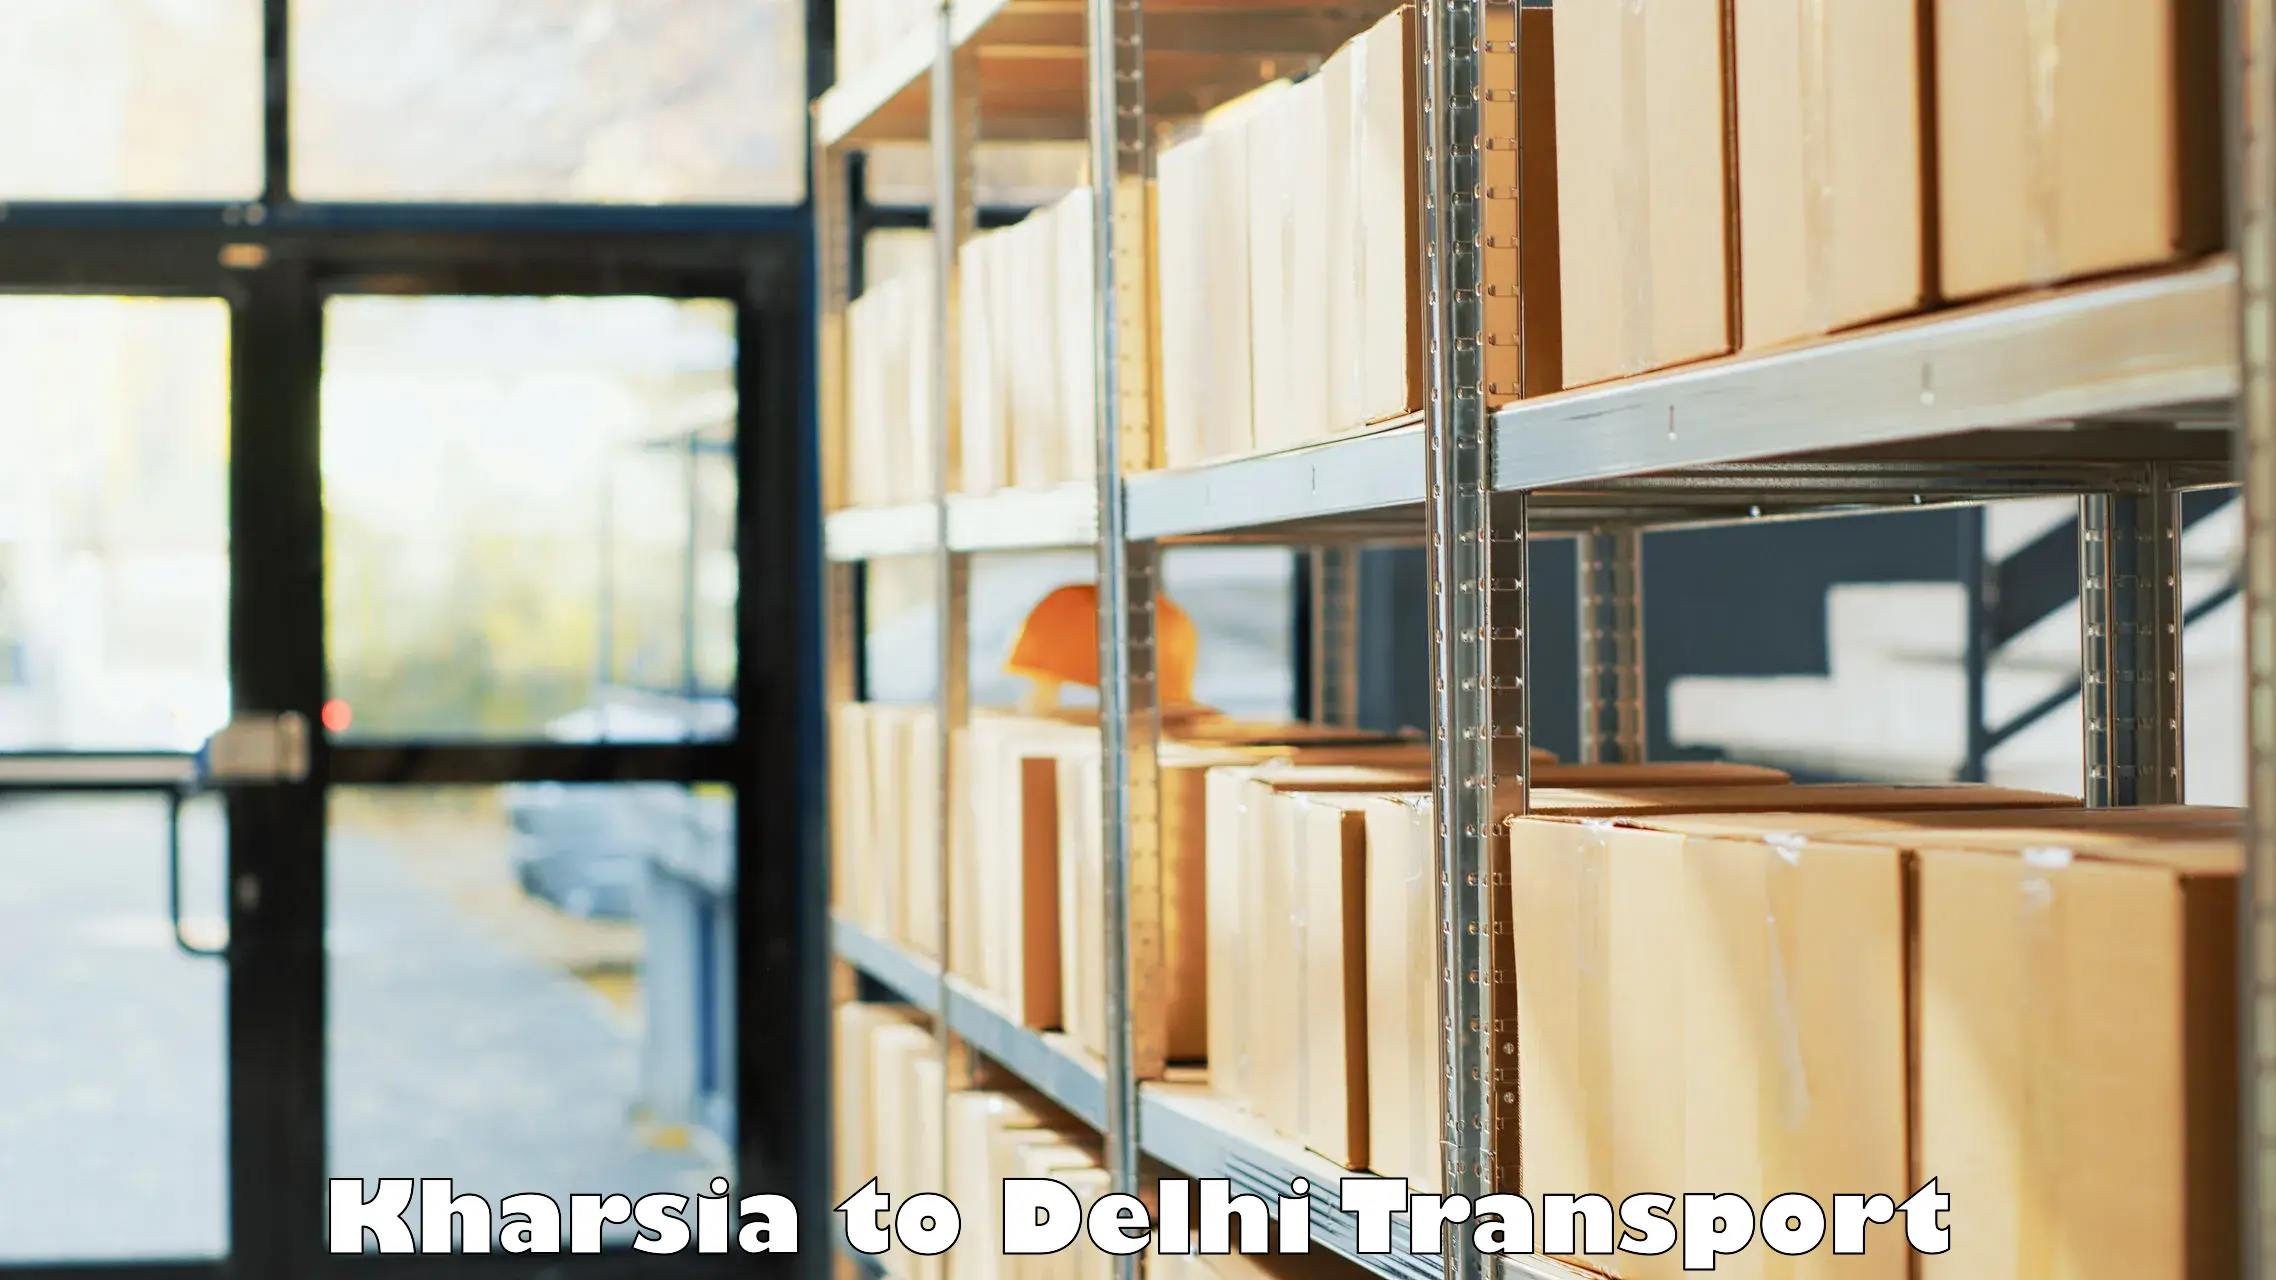 Pick up transport service Kharsia to Delhi